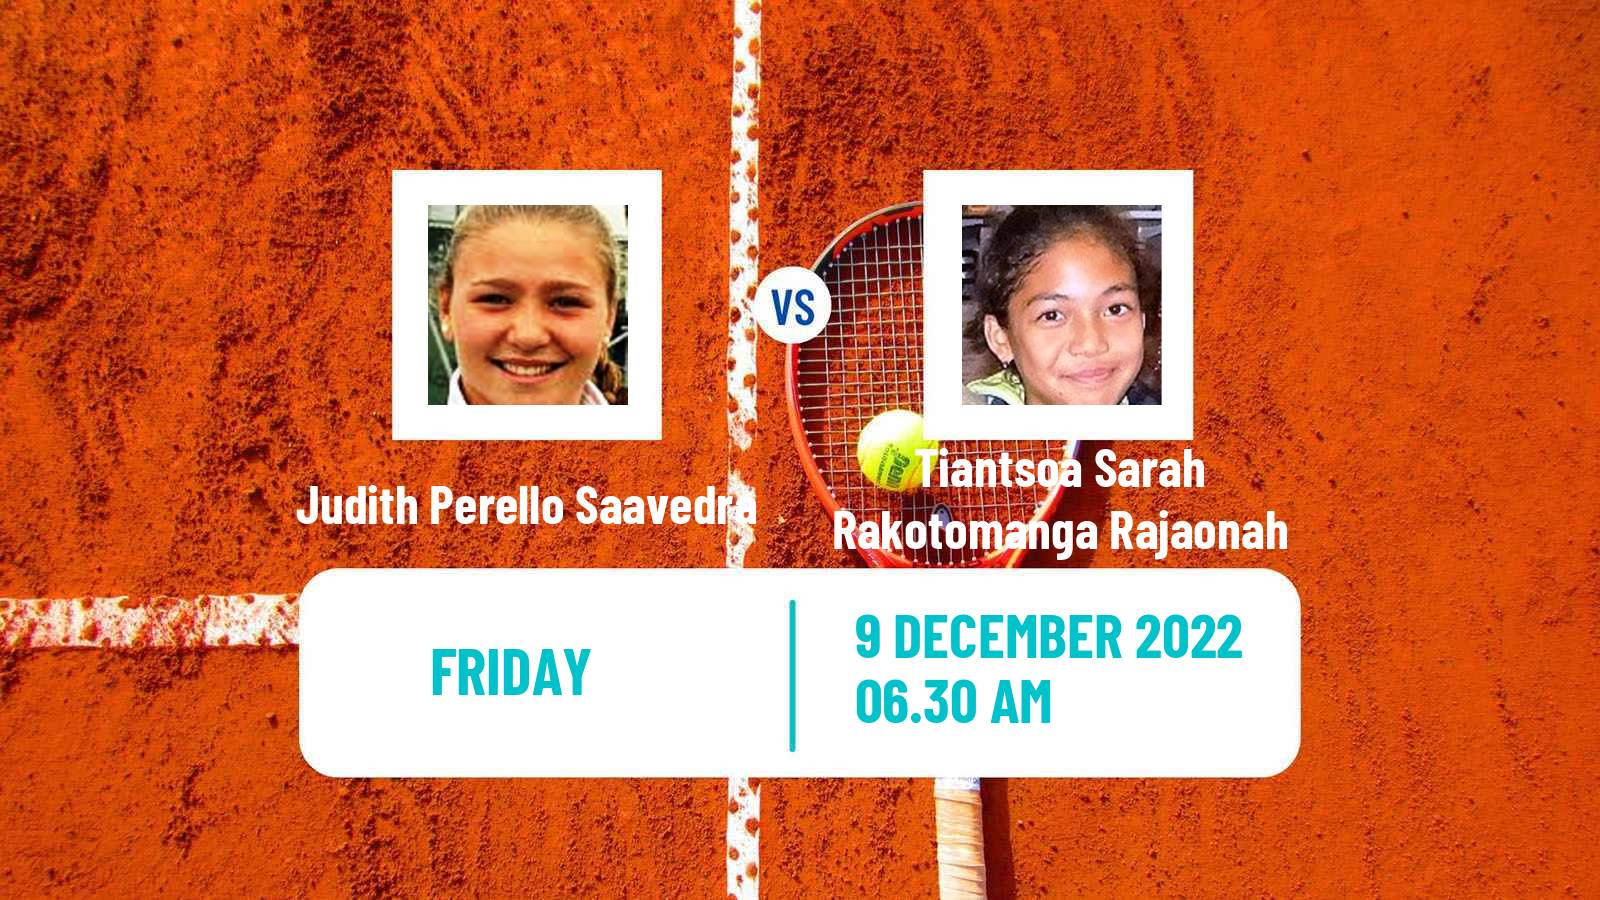 Tennis ITF Tournaments Judith Perello Saavedra - Tiantsoa Sarah Rakotomanga Rajaonah